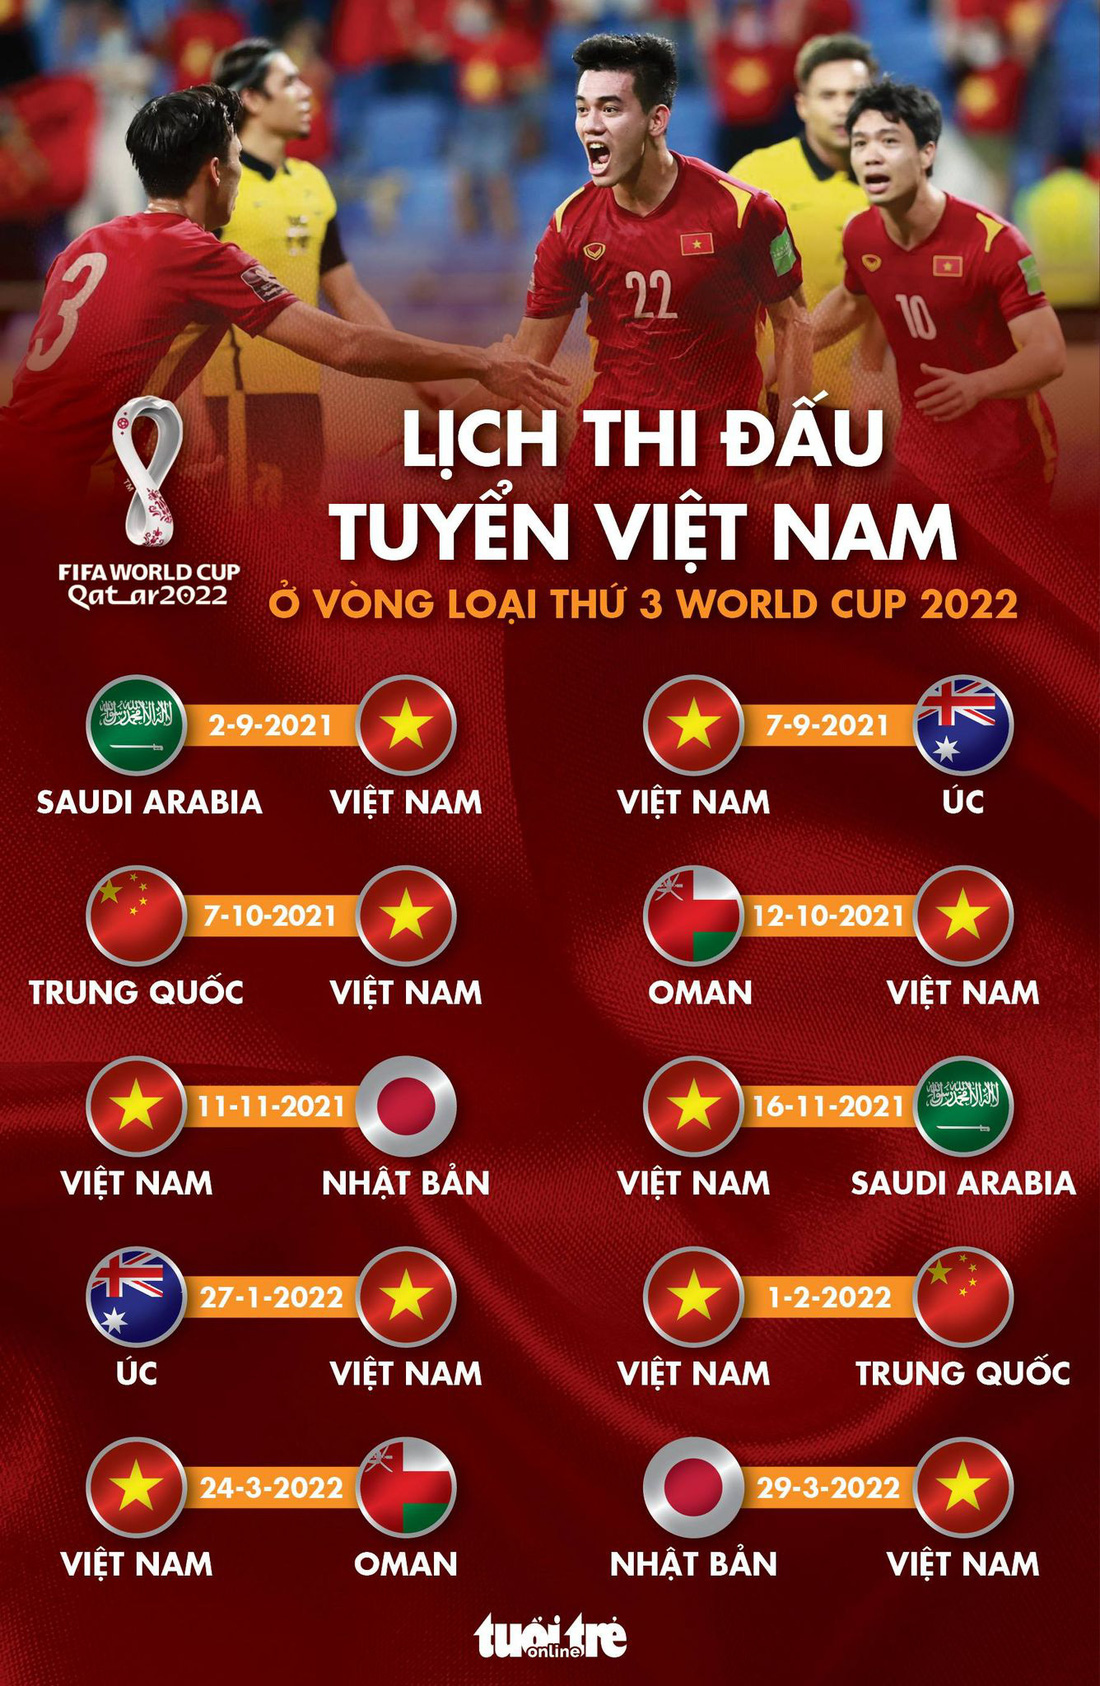 Lịch thi đấu của tuyển Việt Nam ở vòng loại cuối cùng World Cup 2022 - Ảnh 1.